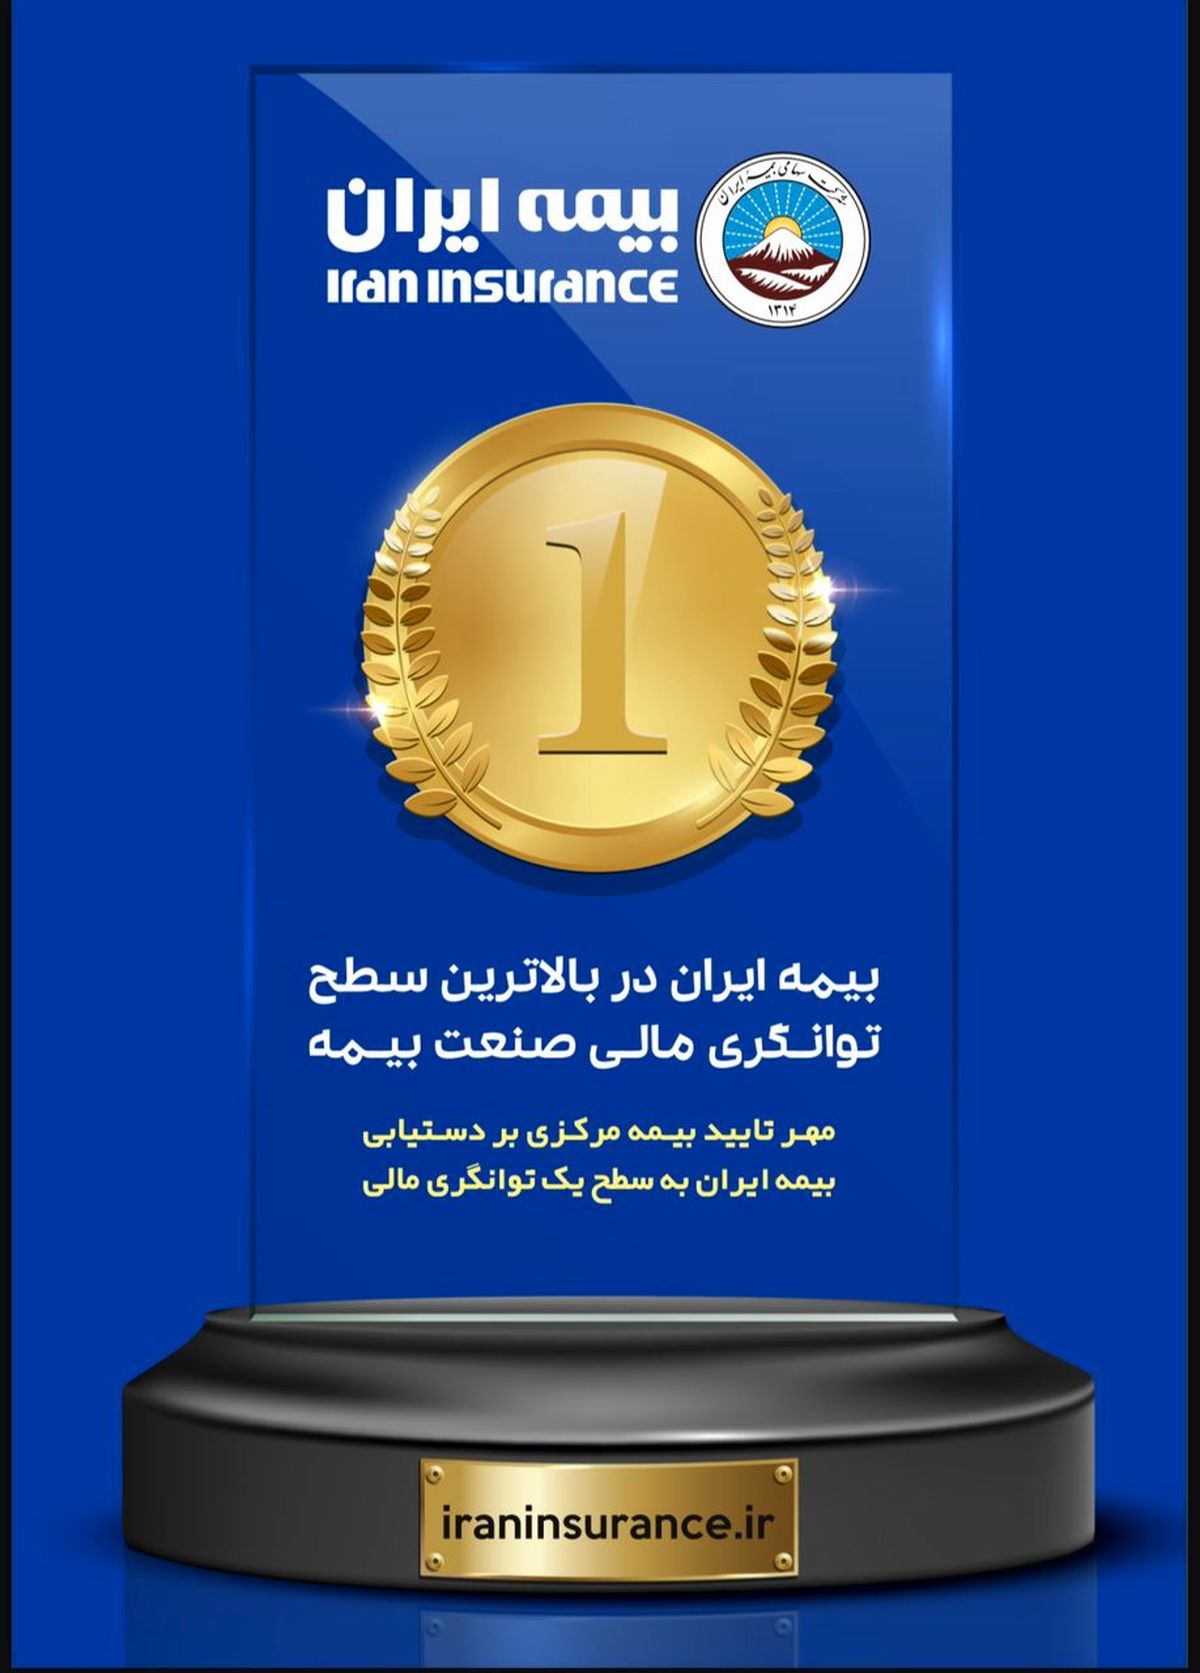  برتری بیمه ایران در صنعت بیمه کشور با بیش از51 هزار میلیارد ریال ظرفیت مجاز قبولی ریسک